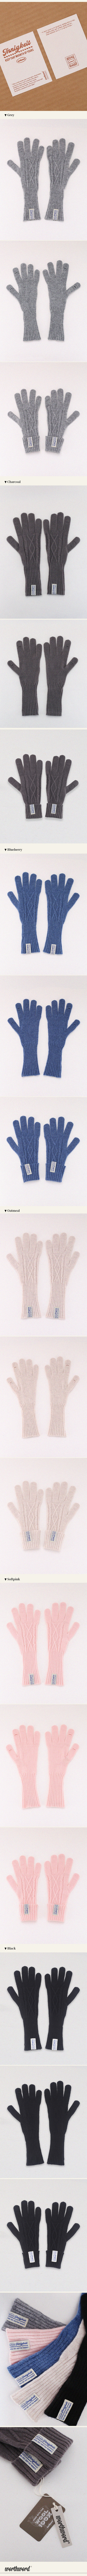 DE-900-Innigkeit-Gloves-6-col-2.jpg